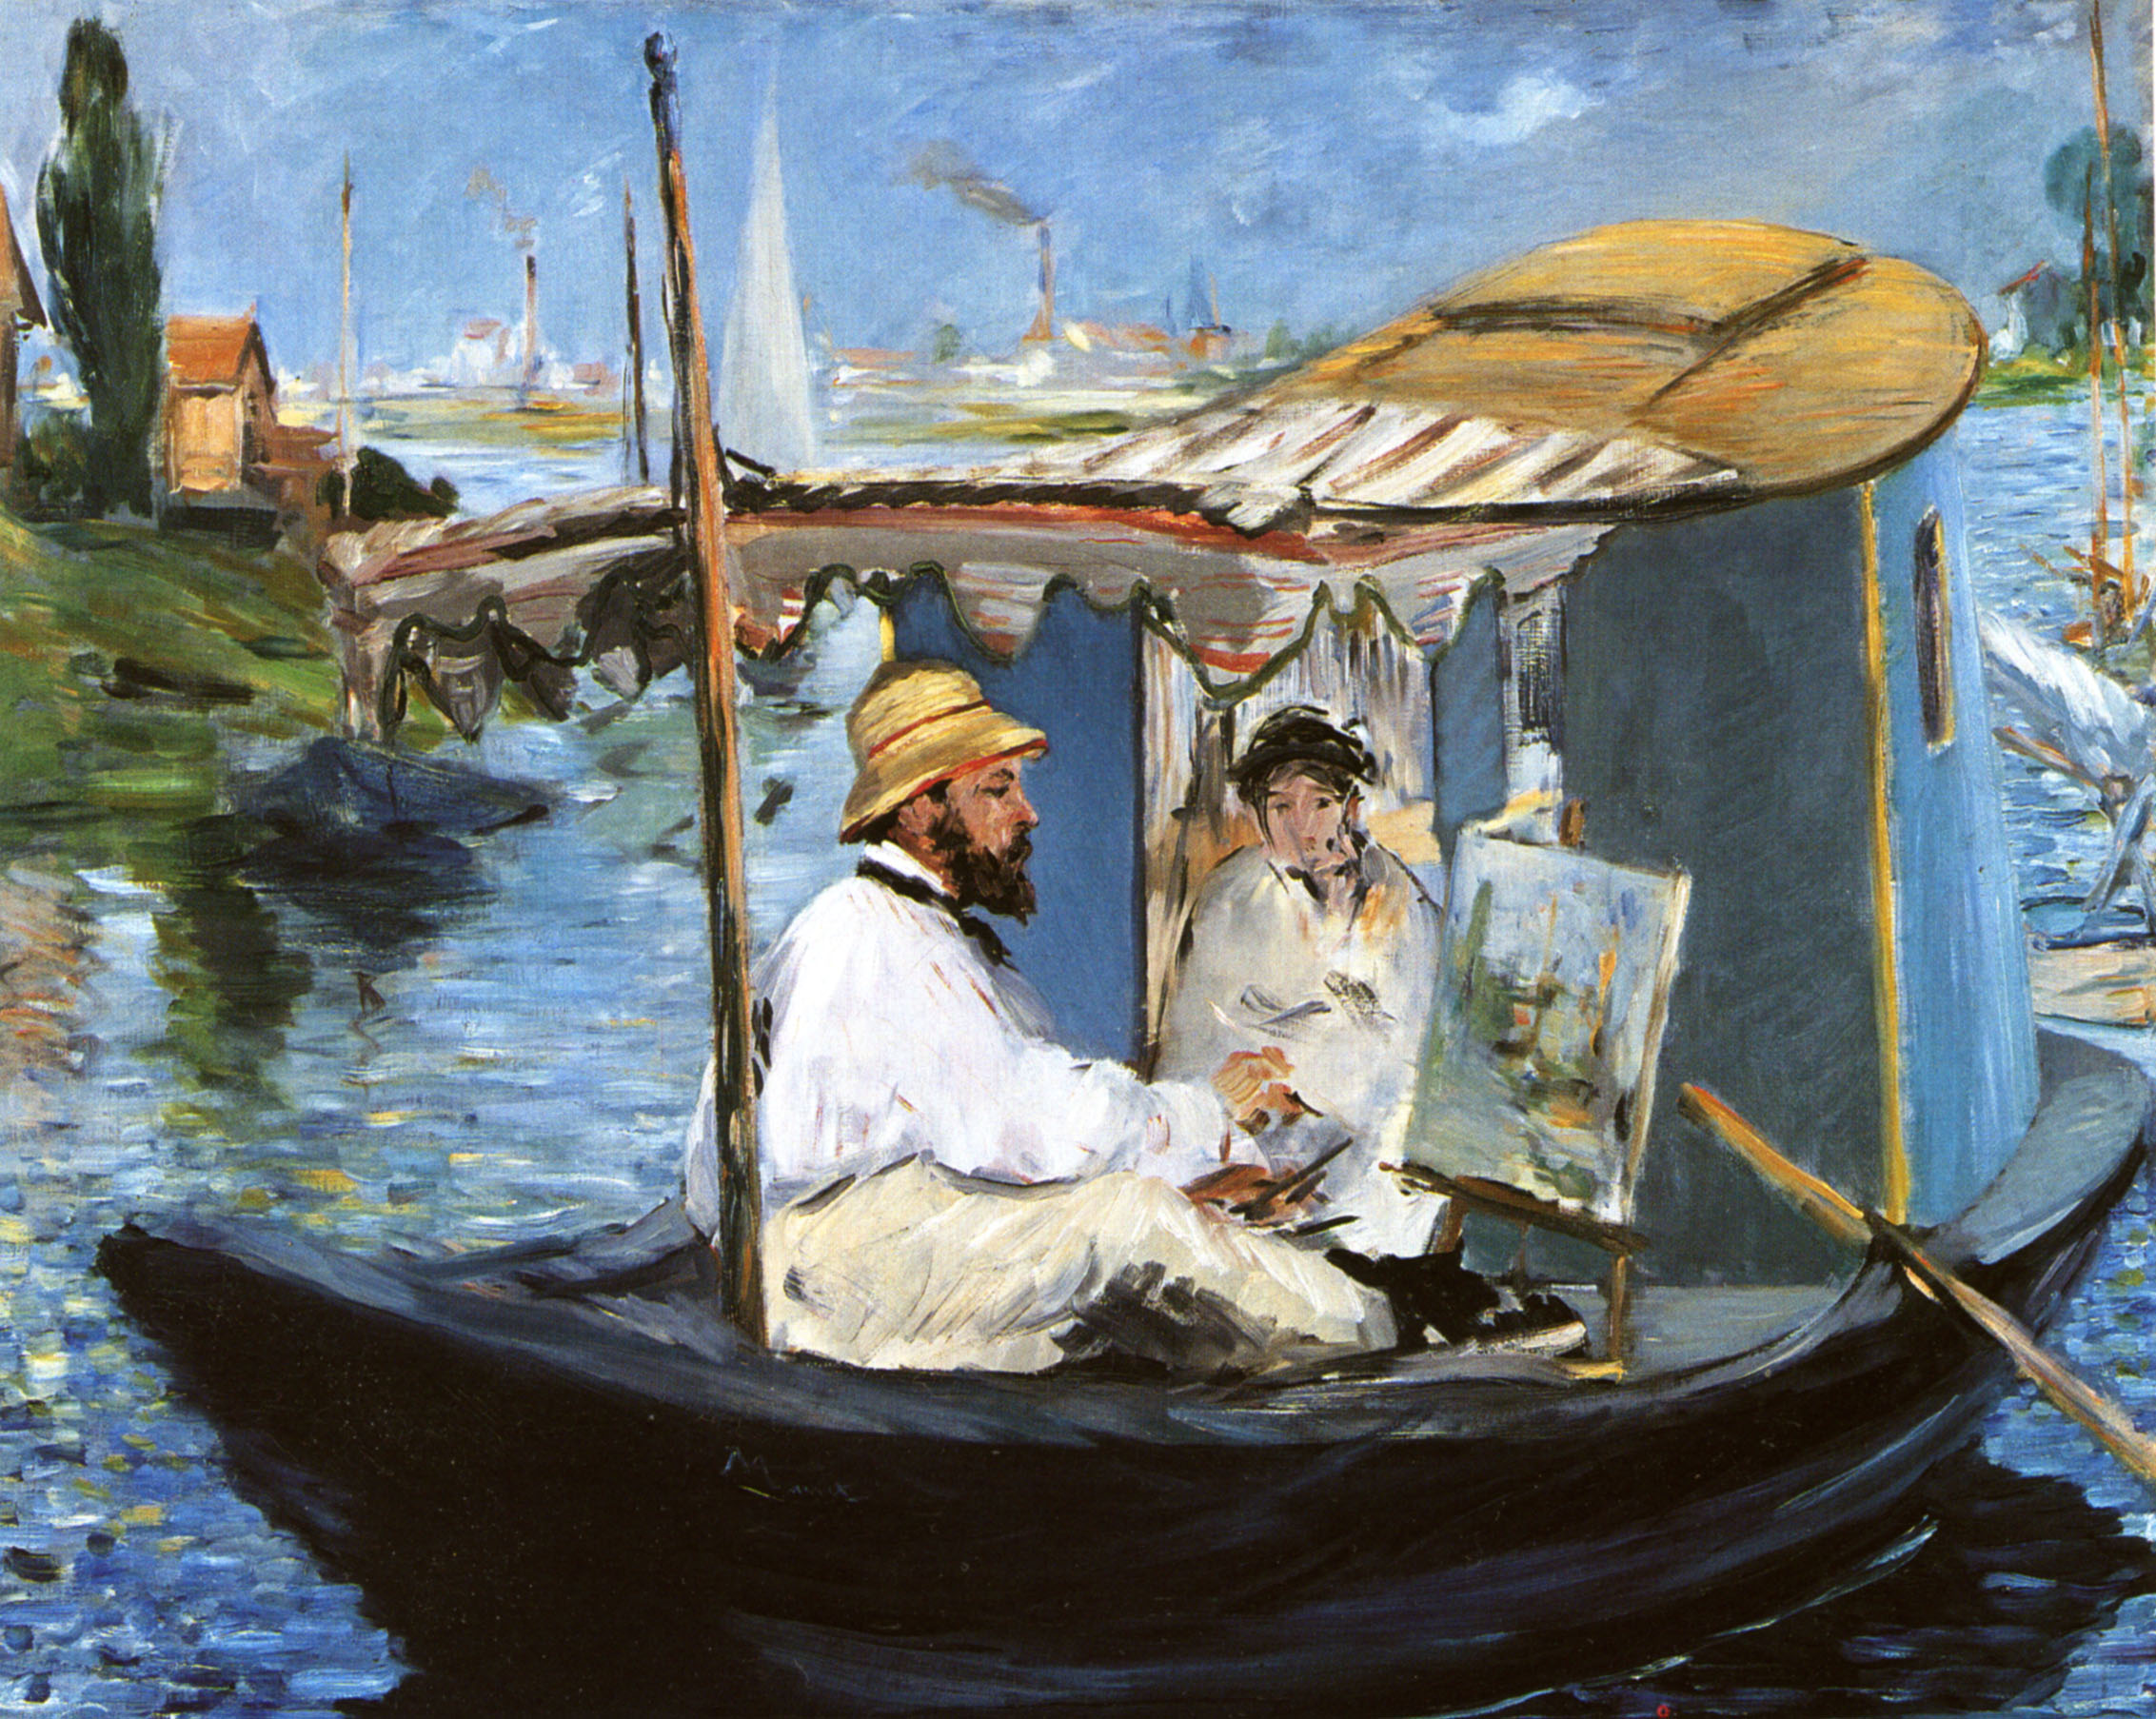 Эдуард Мане. "Клод Моне в лодке". 1874. Новая Пинакотека, Мюнхен.